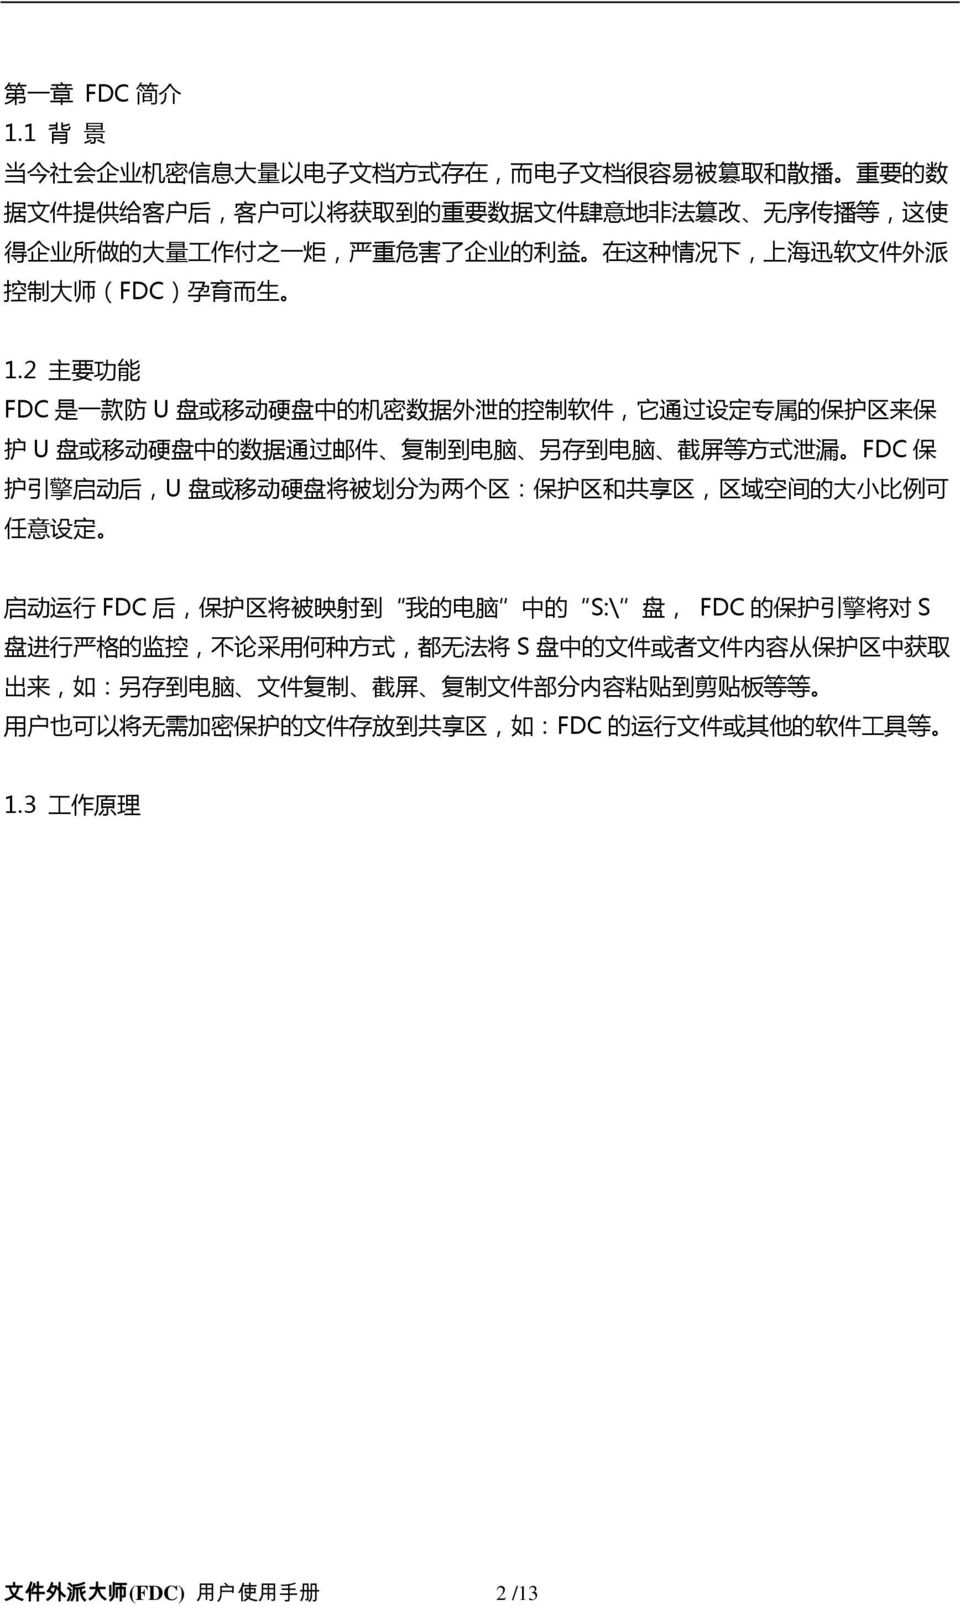 了 企 业 的 利 益 在 这 种 情 况 下, 上 海 迅 软 文 件 外 派 控 制 大 师 (FDC) 孕 育 而 生 1.